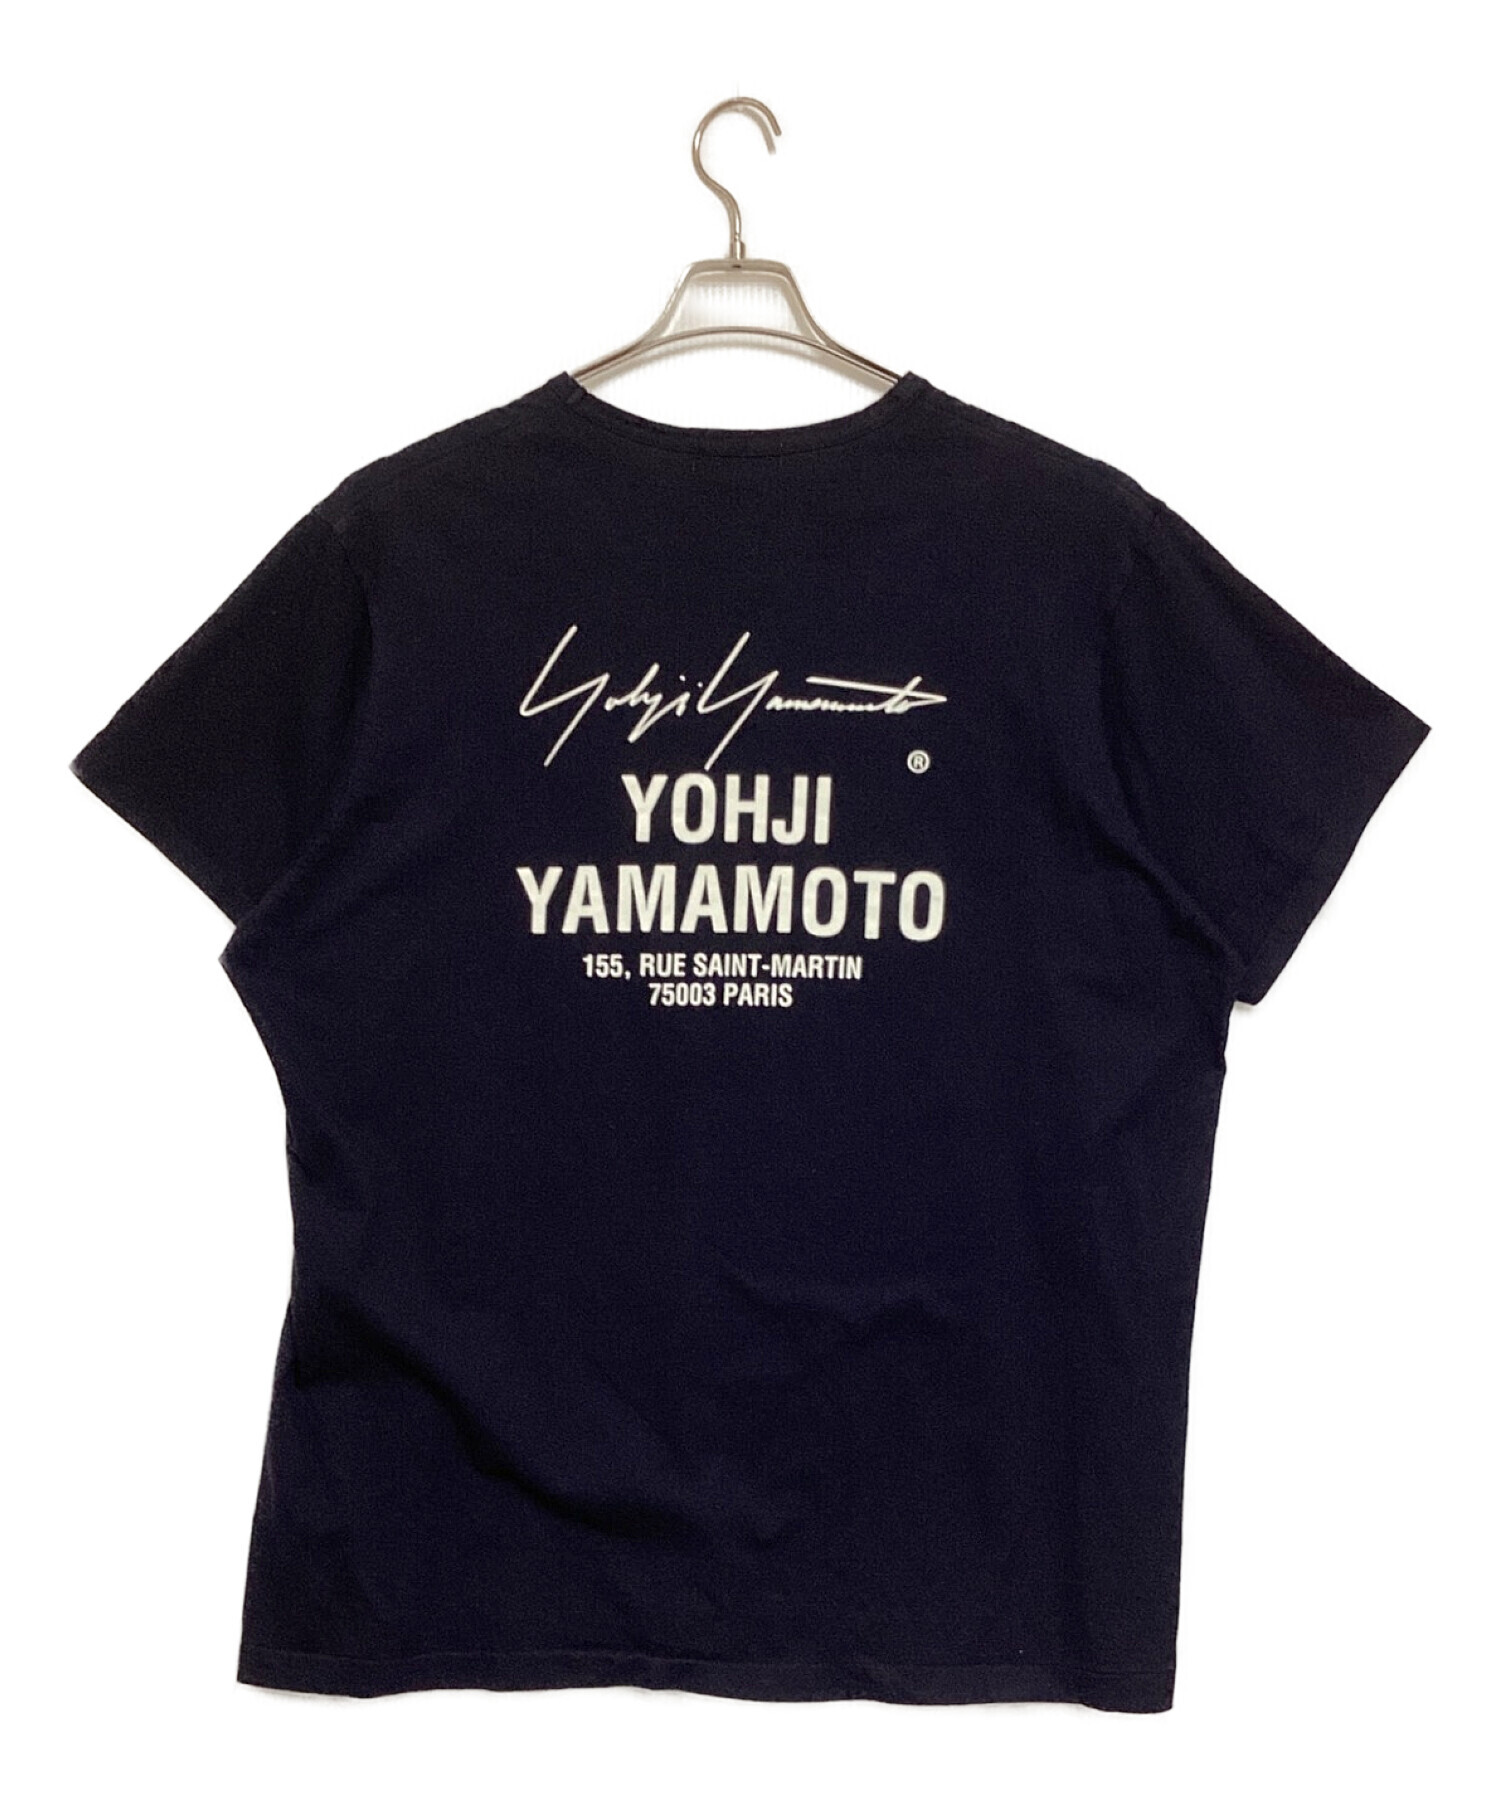 Yohji Yamamoto pour homme (ヨウジヤマモト プールオム) スタッフTシャツ ネイビー サイズ:3